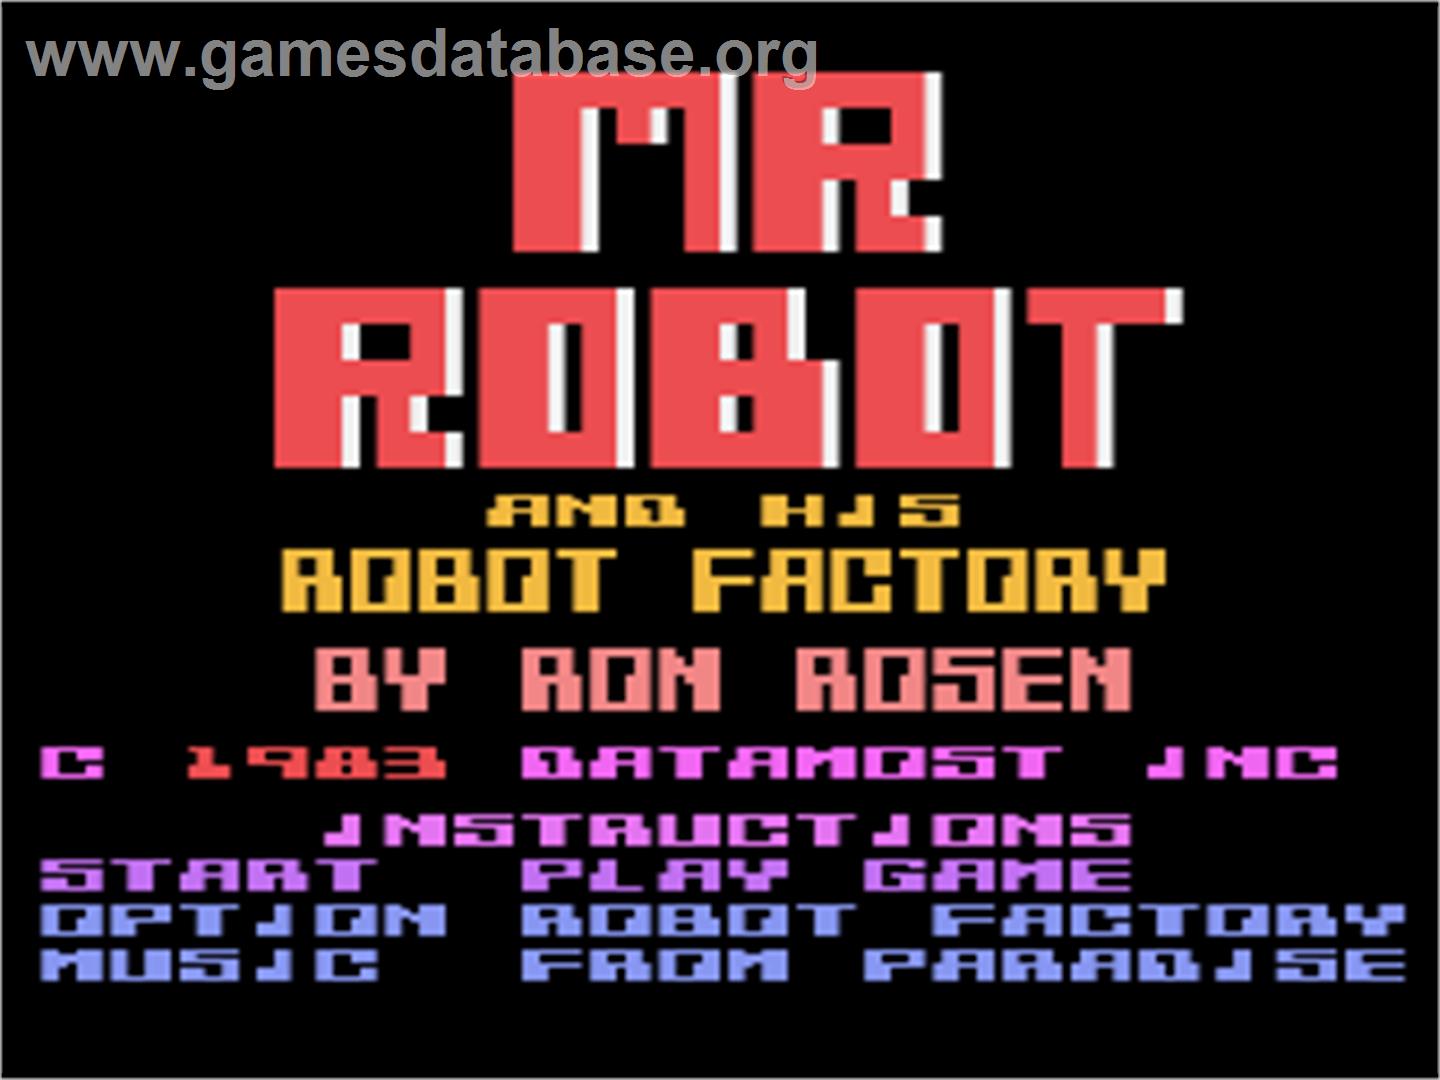 Mr. Robot and his Robot Factory - Atari 8-bit - Artwork - Title Screen